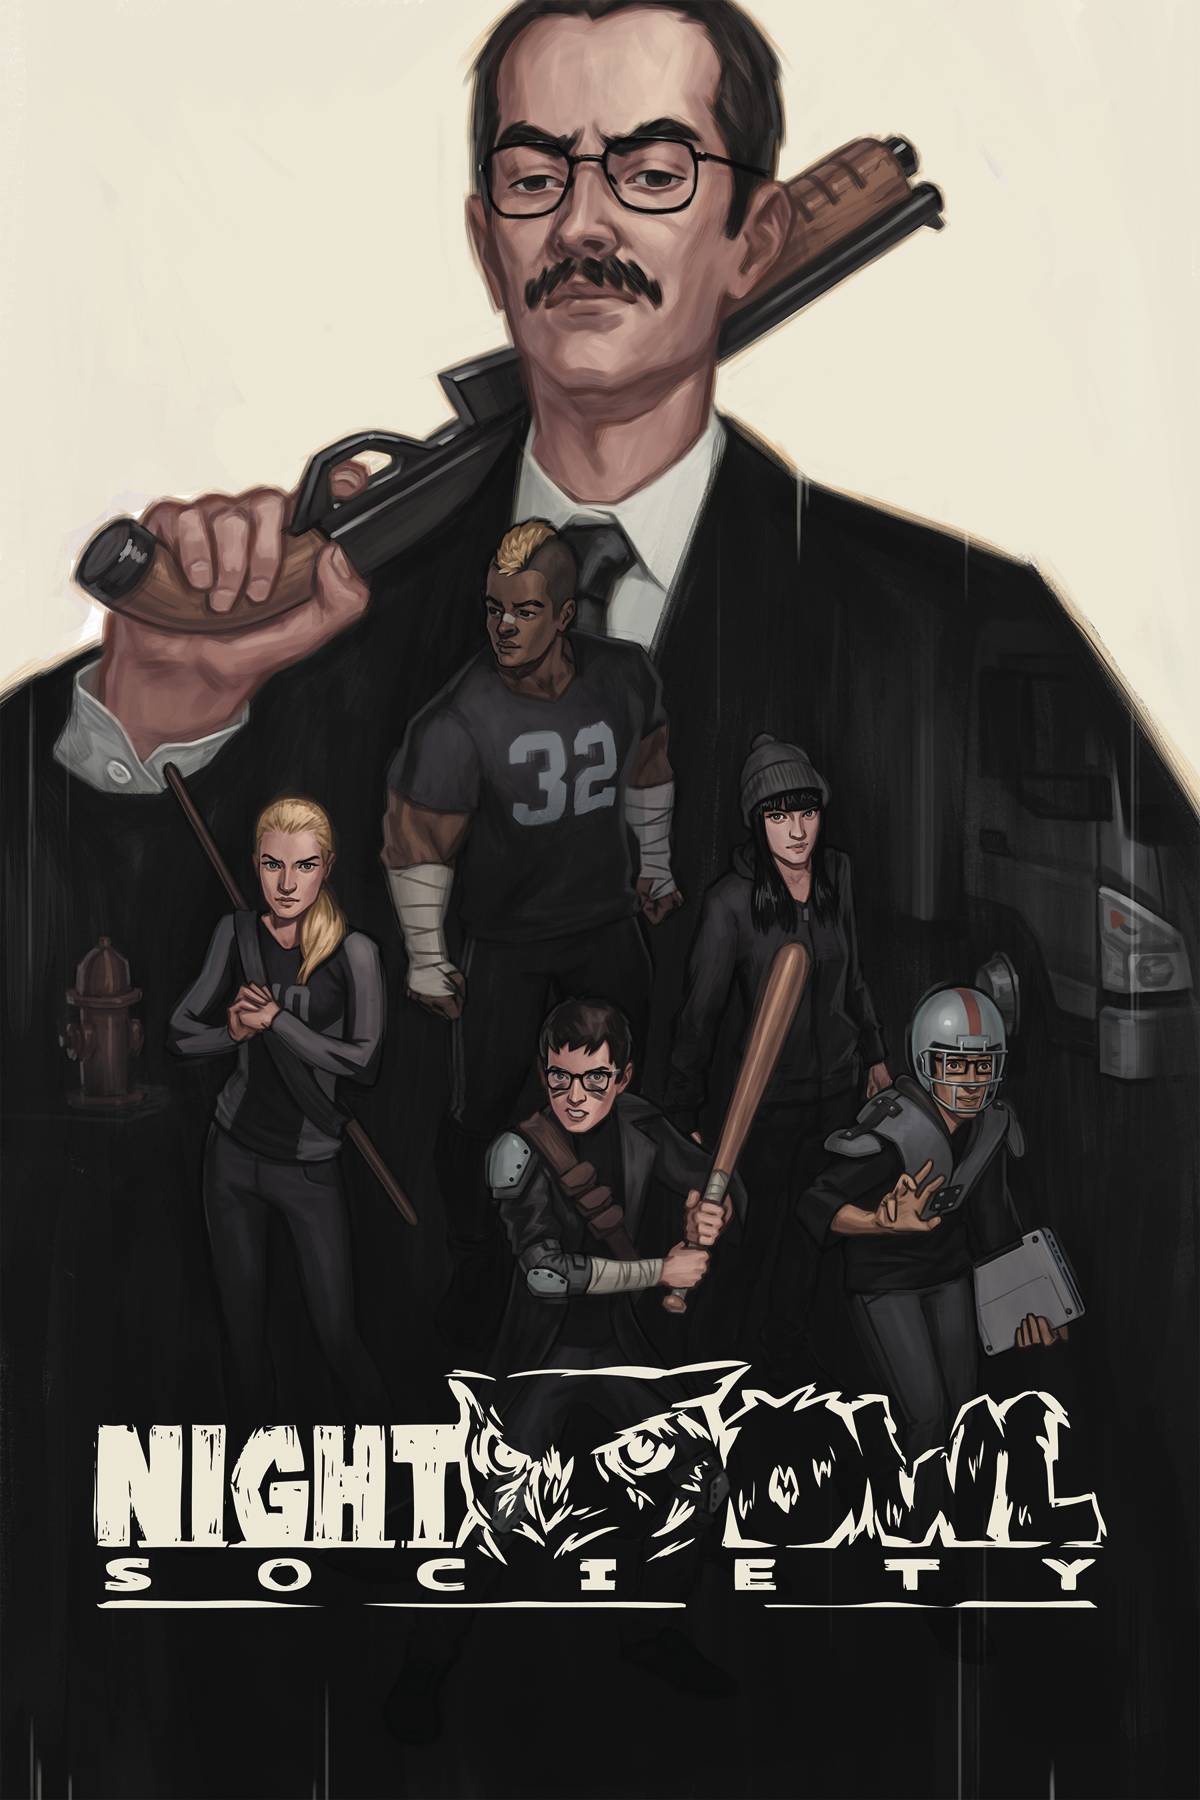 Night Owl Society Graphic Novel